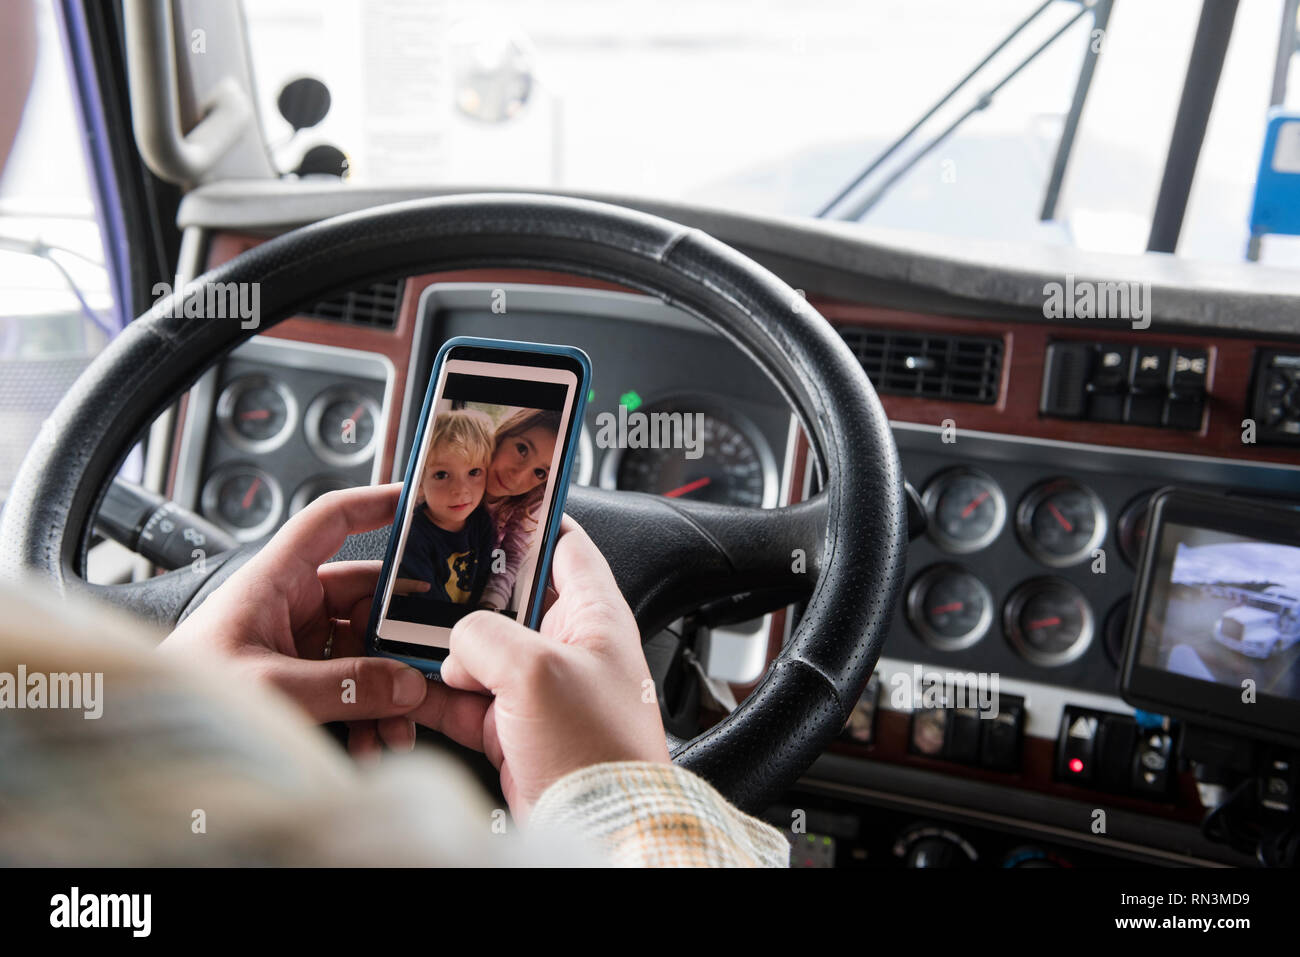 Mains de camionneur holding smart phone avec photo de ses enfants Banque D'Images